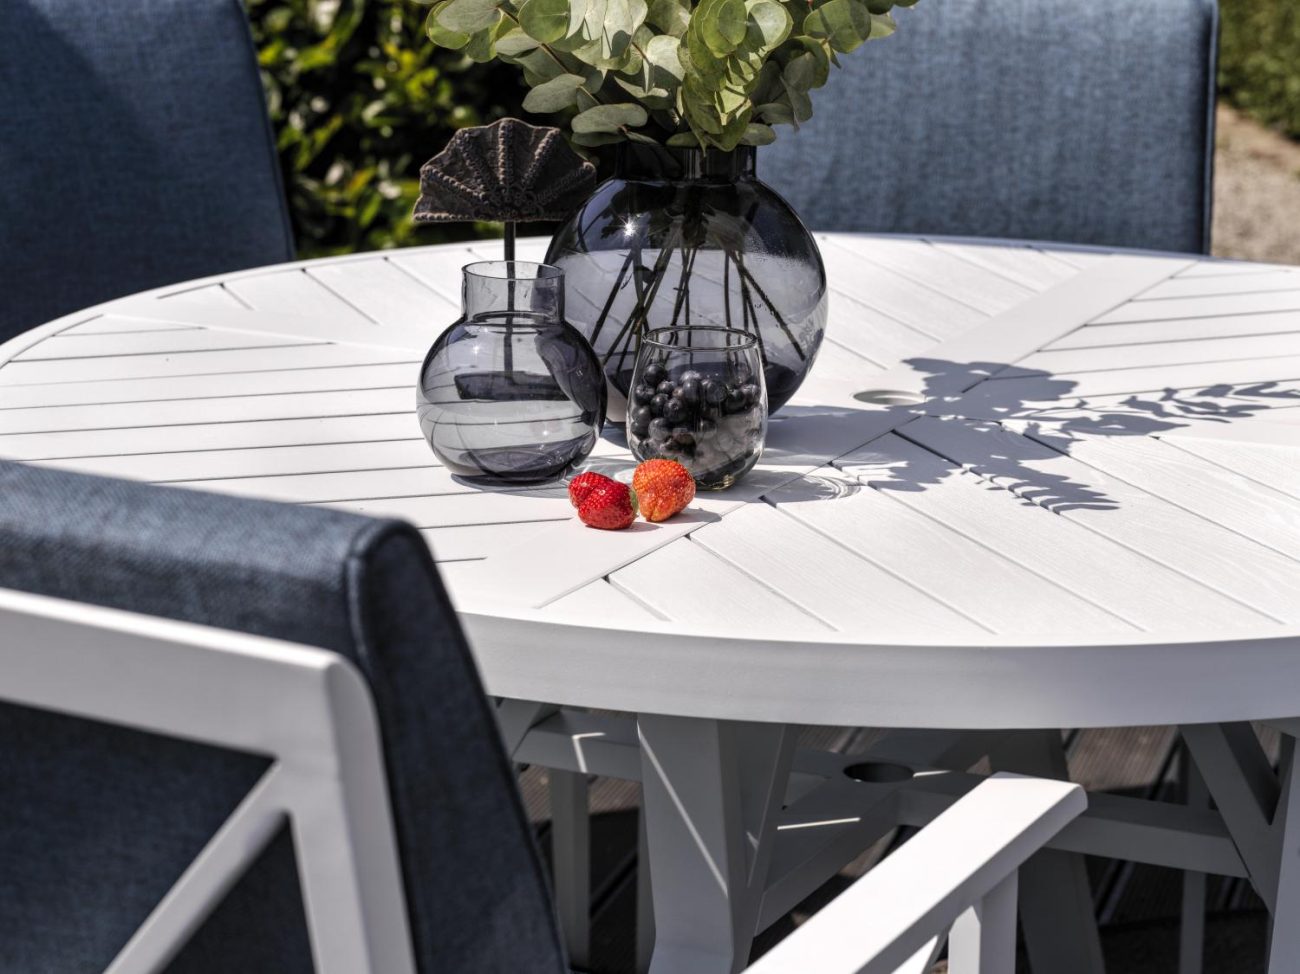 Der Gartenesstisch Sottenville überzeugt mit seinem modernen Design. Gefertigt wurde die Tischplatte aus Metall und hat einen weißen Farbton. Das Gestell ist auch aus Metall und hat eine weiße Farbe. Der Tisch besitzt einen Durchmesser von 140 cm.